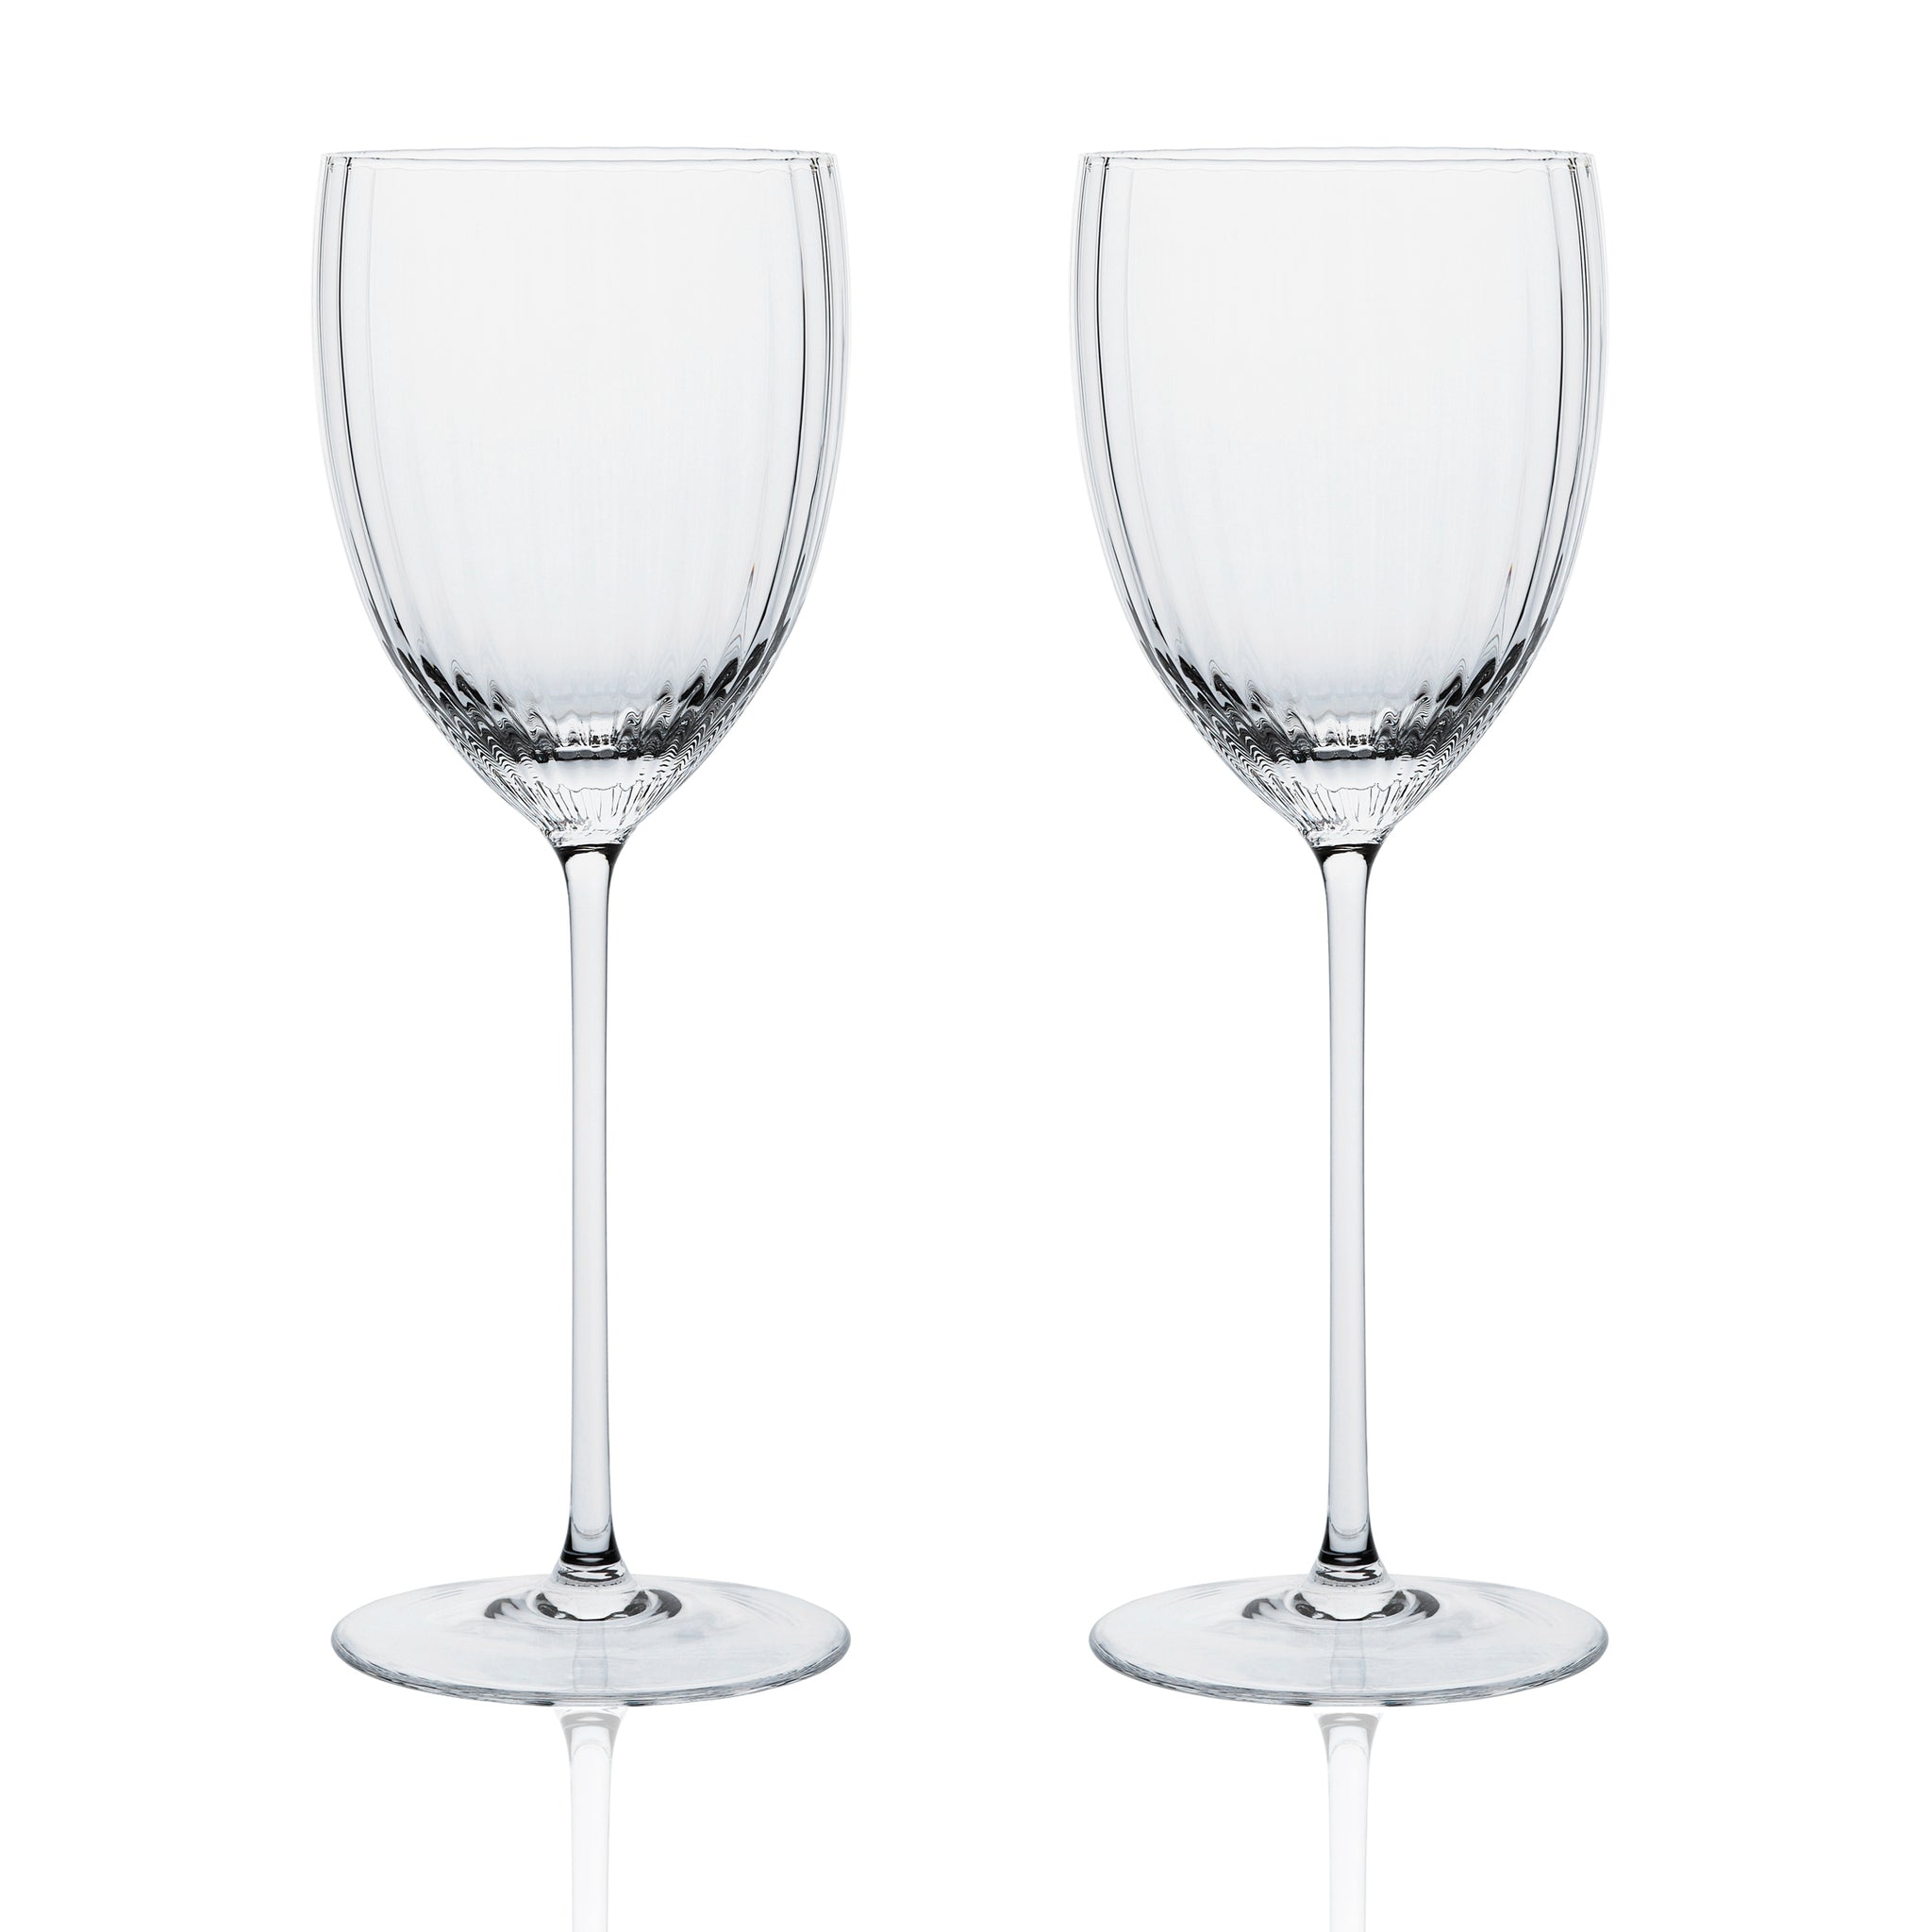 Caskata Lucy White Wine Glasses - Set of 2